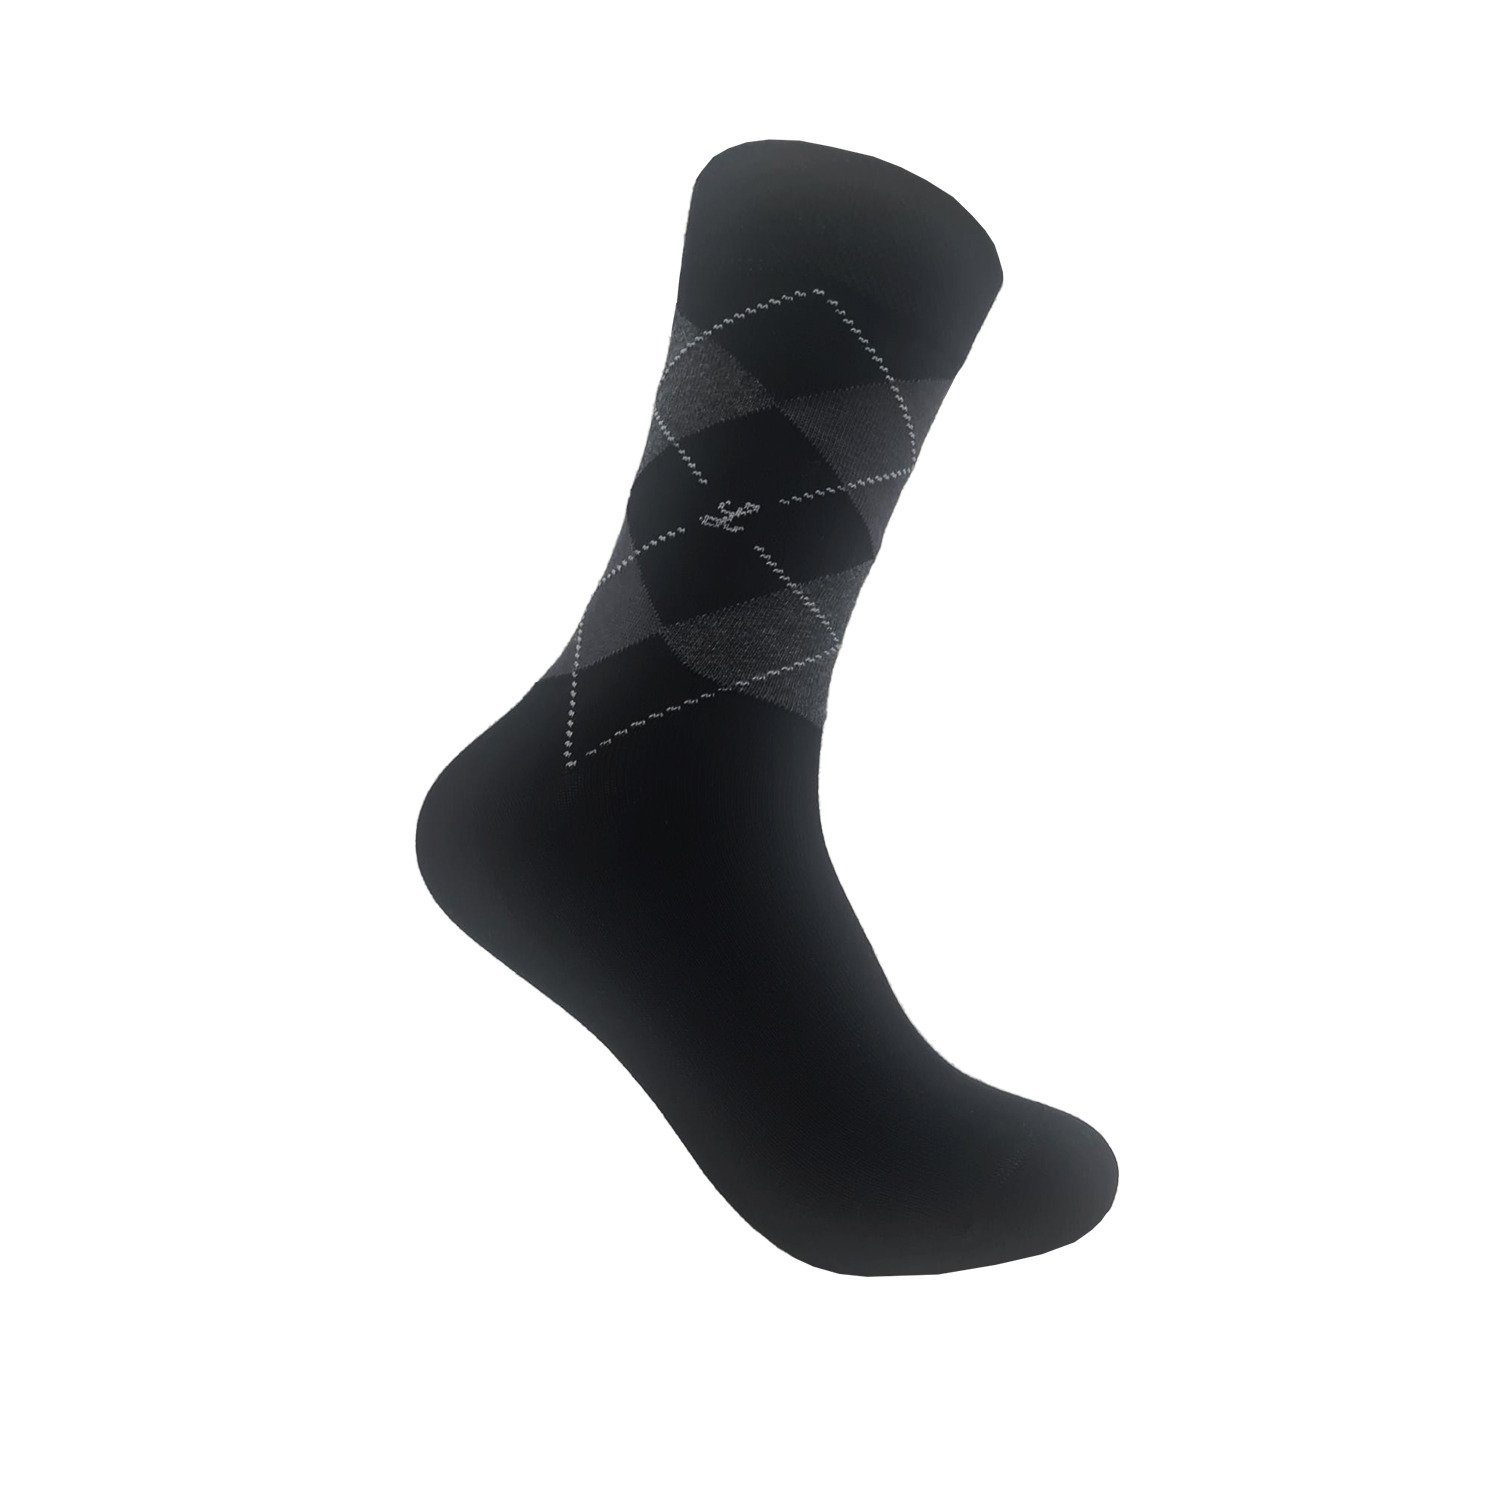 Max Lindner Businesssocken Markensocken aus hochwertiger Baumwolle für Damen und Herren (unifarbend und gemustert, 1-Paar) atmungsaktiv und hautfreundlich Mix schwarz | Socken